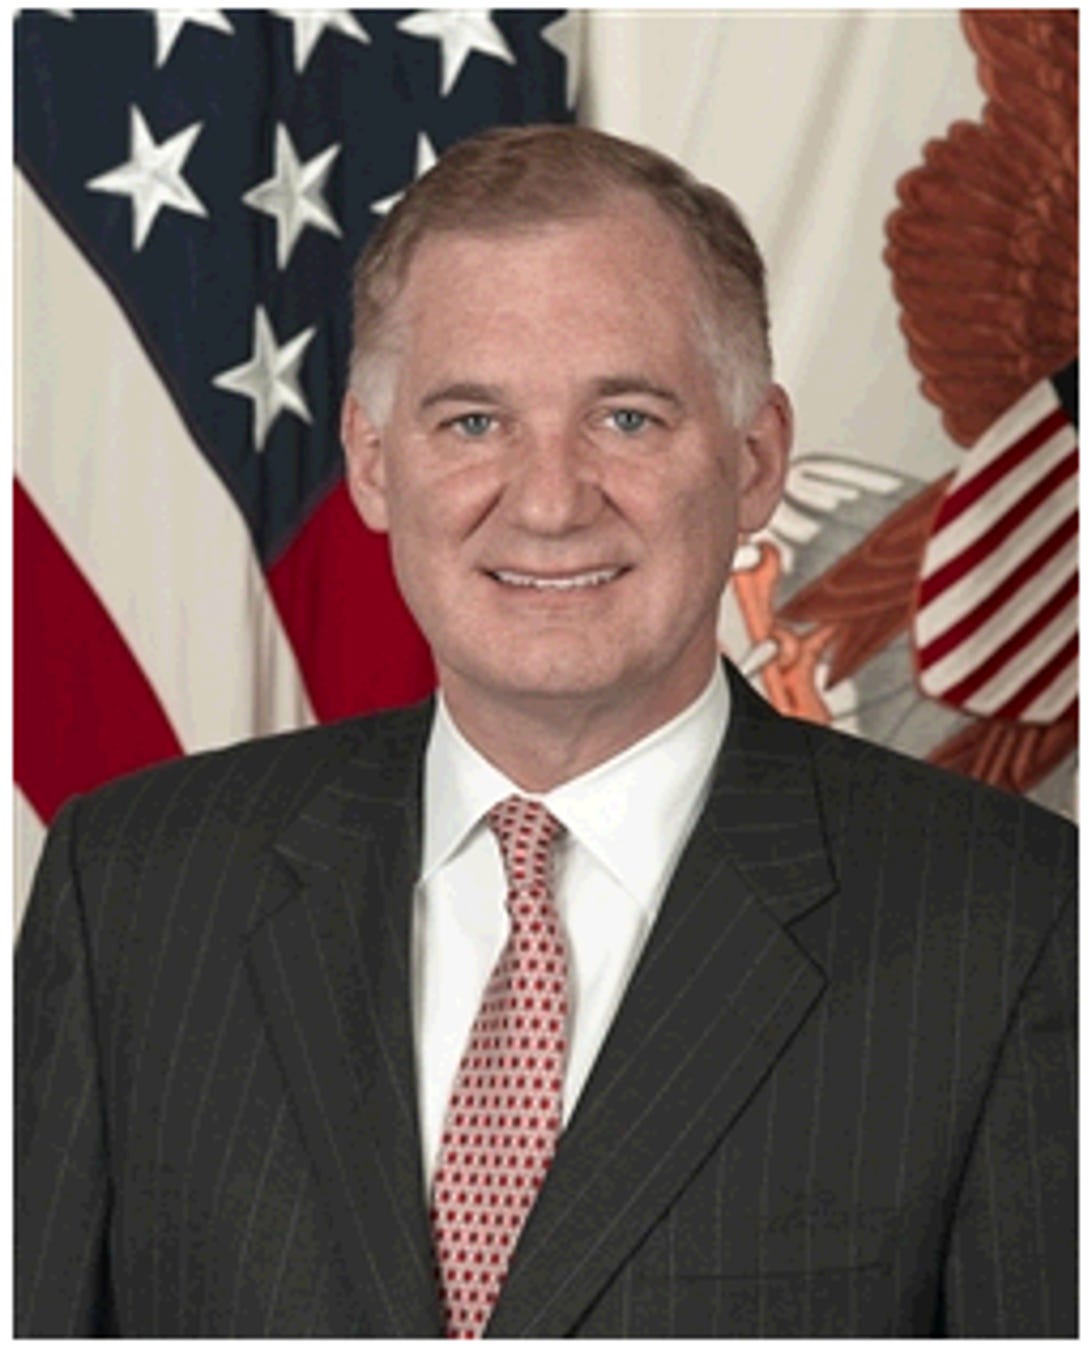 William J. Lynn III, deputy secretary of defense